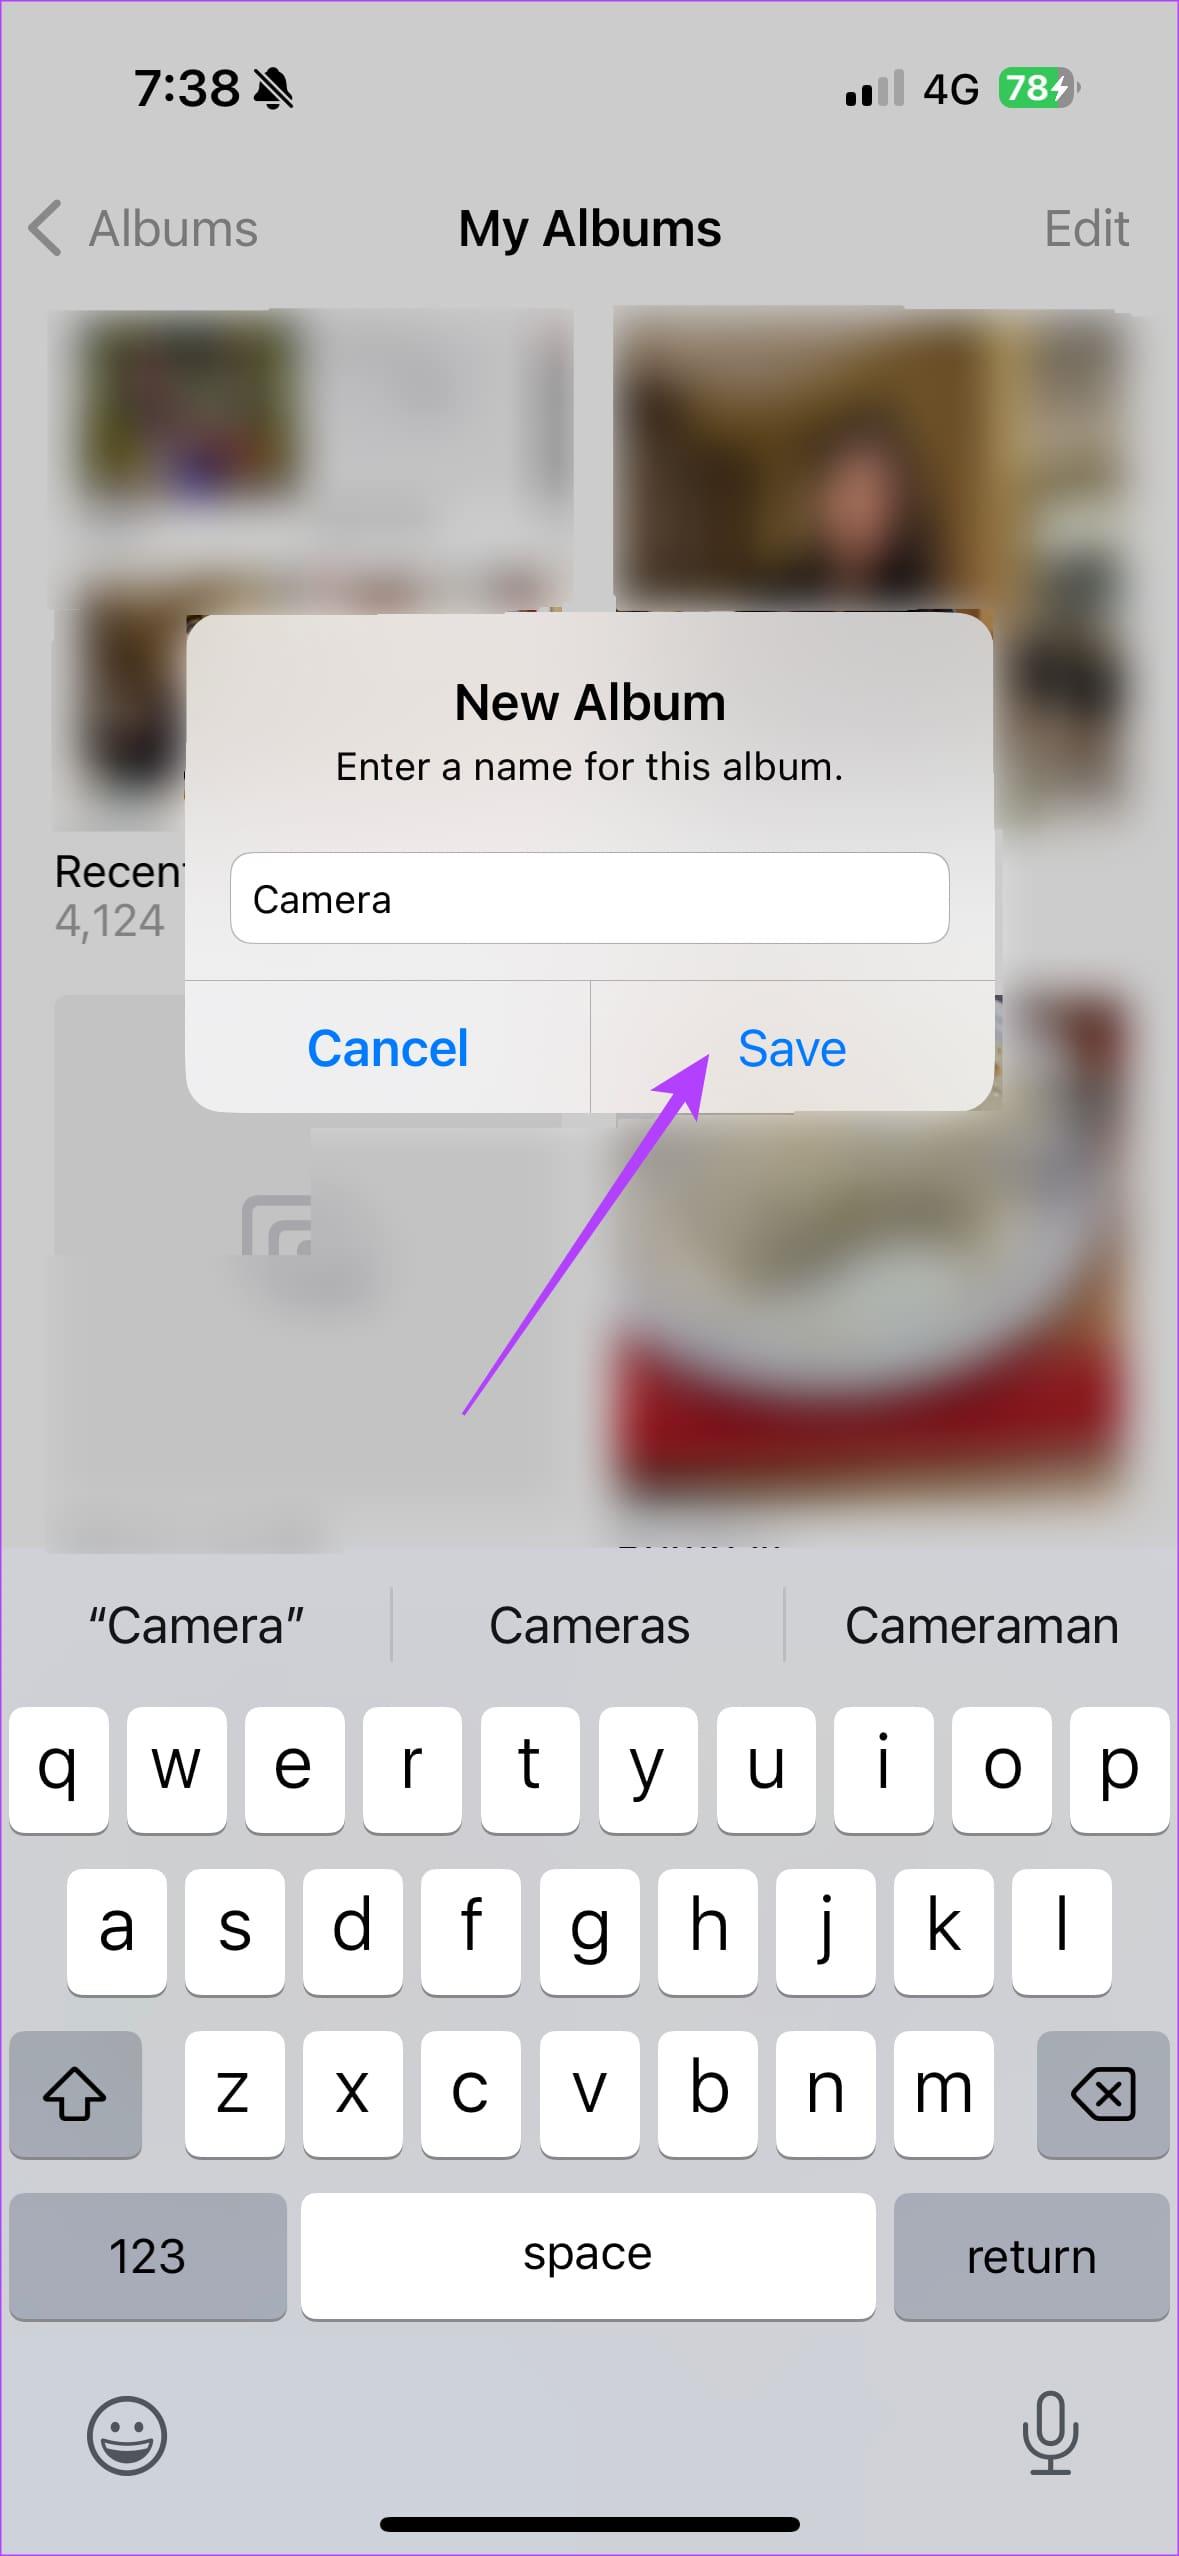 كيفية عرض صور الكاميرا فقط على iPhone